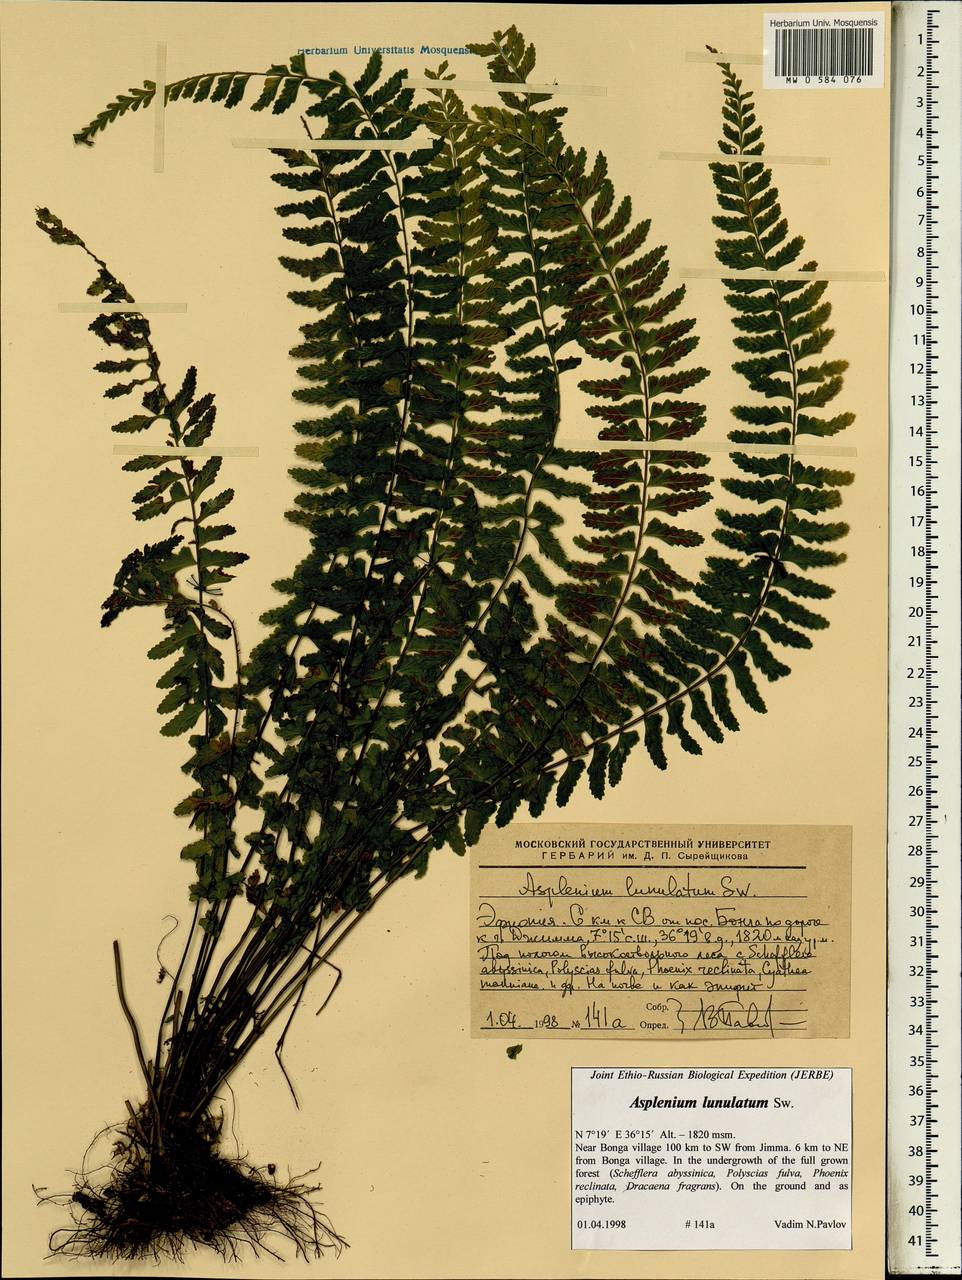 Asplenium lunulatum Sw., Африка (AFR) (Эфиопия)